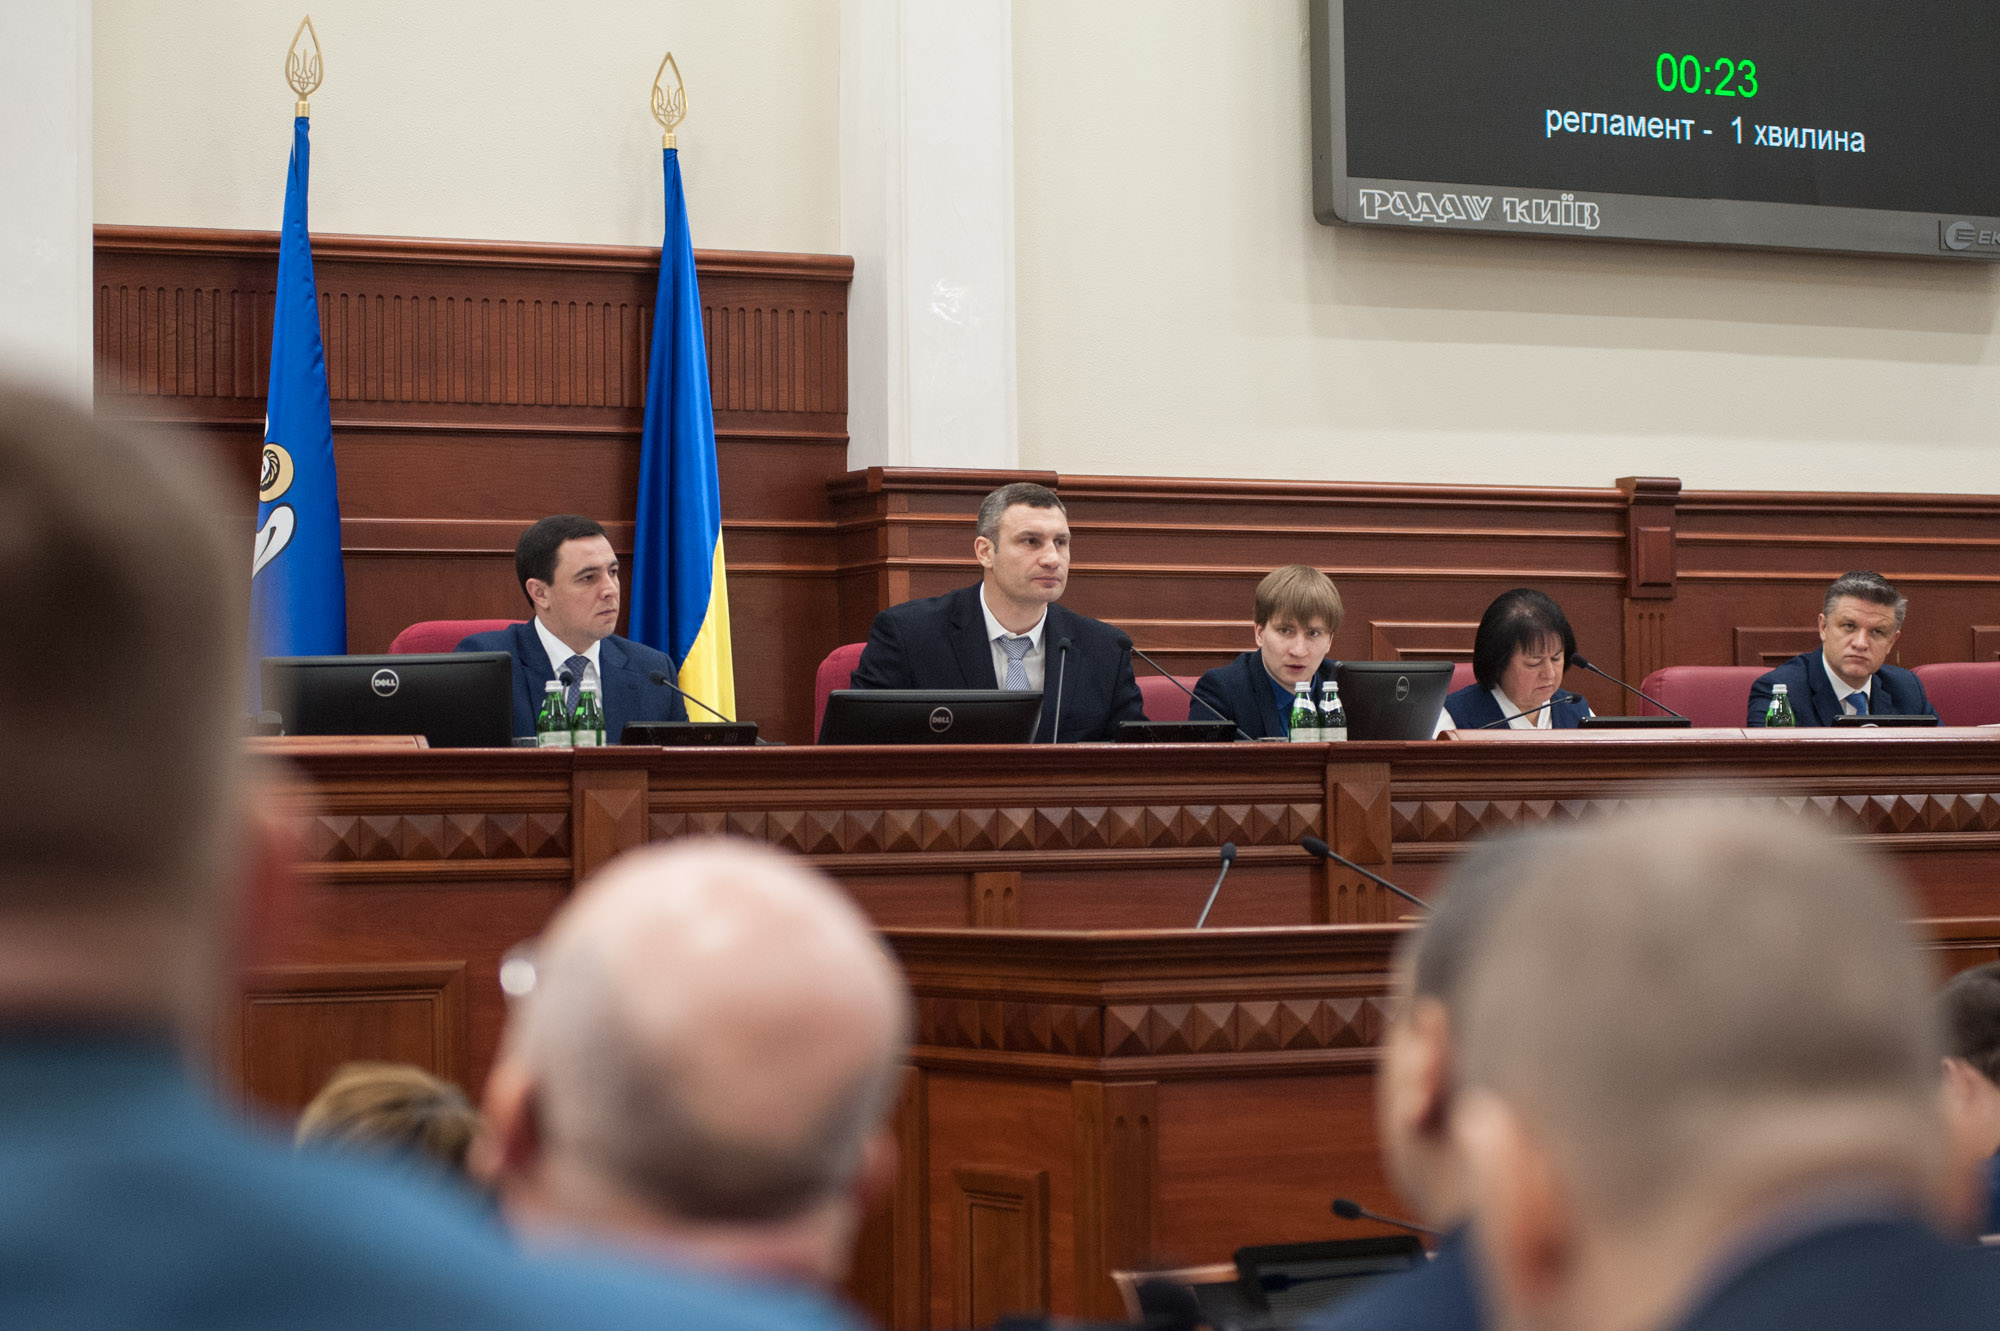 Виталий Кличко обязал “Киевэнерго” предоставить киевлянам доступ к снятию показаний домового счетчика, чтобы обеспечить прозрачность начислений за тепло